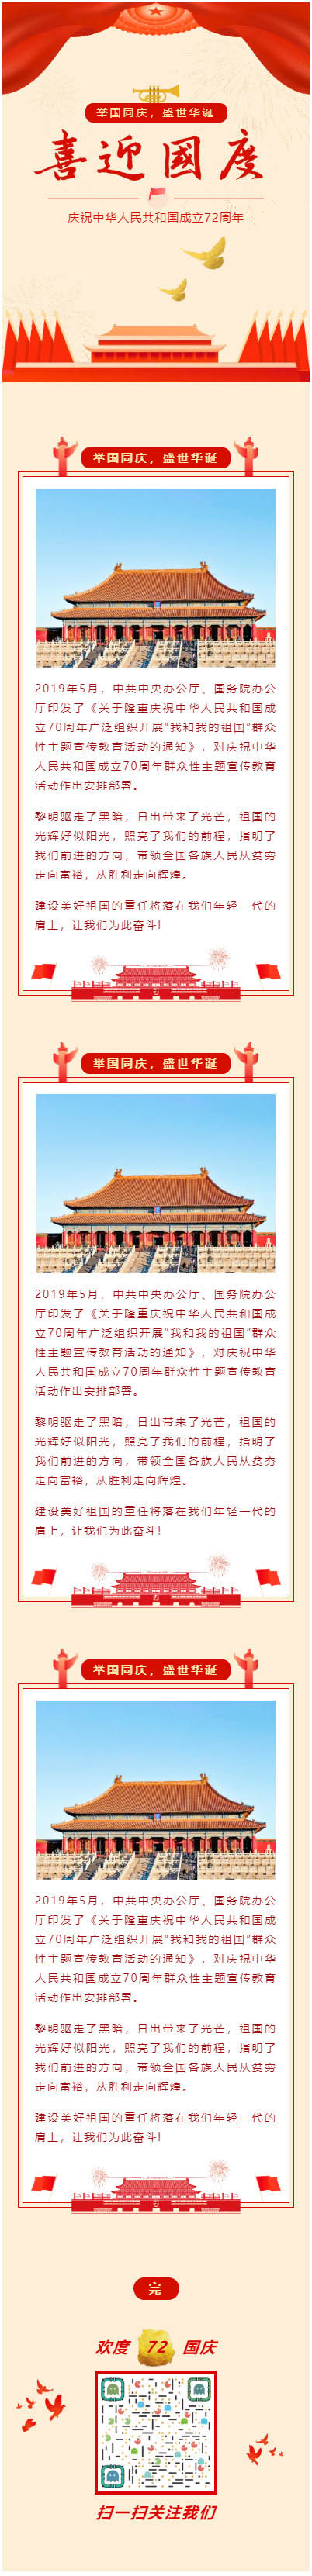 公众号国庆节微信模板庆祝中华人民共和国成立72周年订阅号推送图文素材